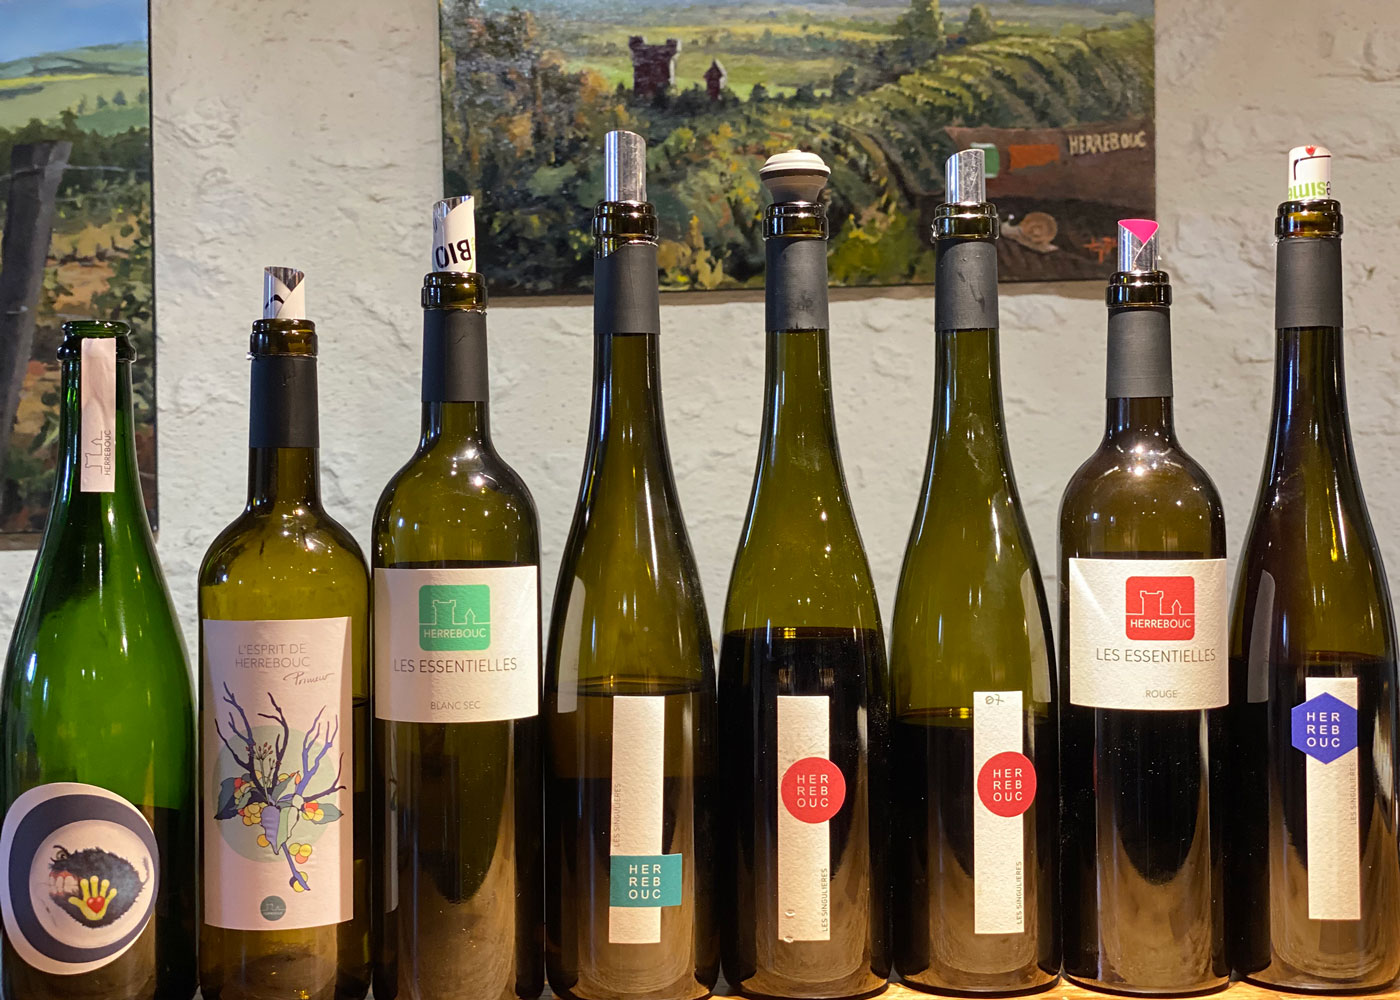 Sélection de vins du domaine de Herrebouc sur le bar du caveau de vente pour dégustation